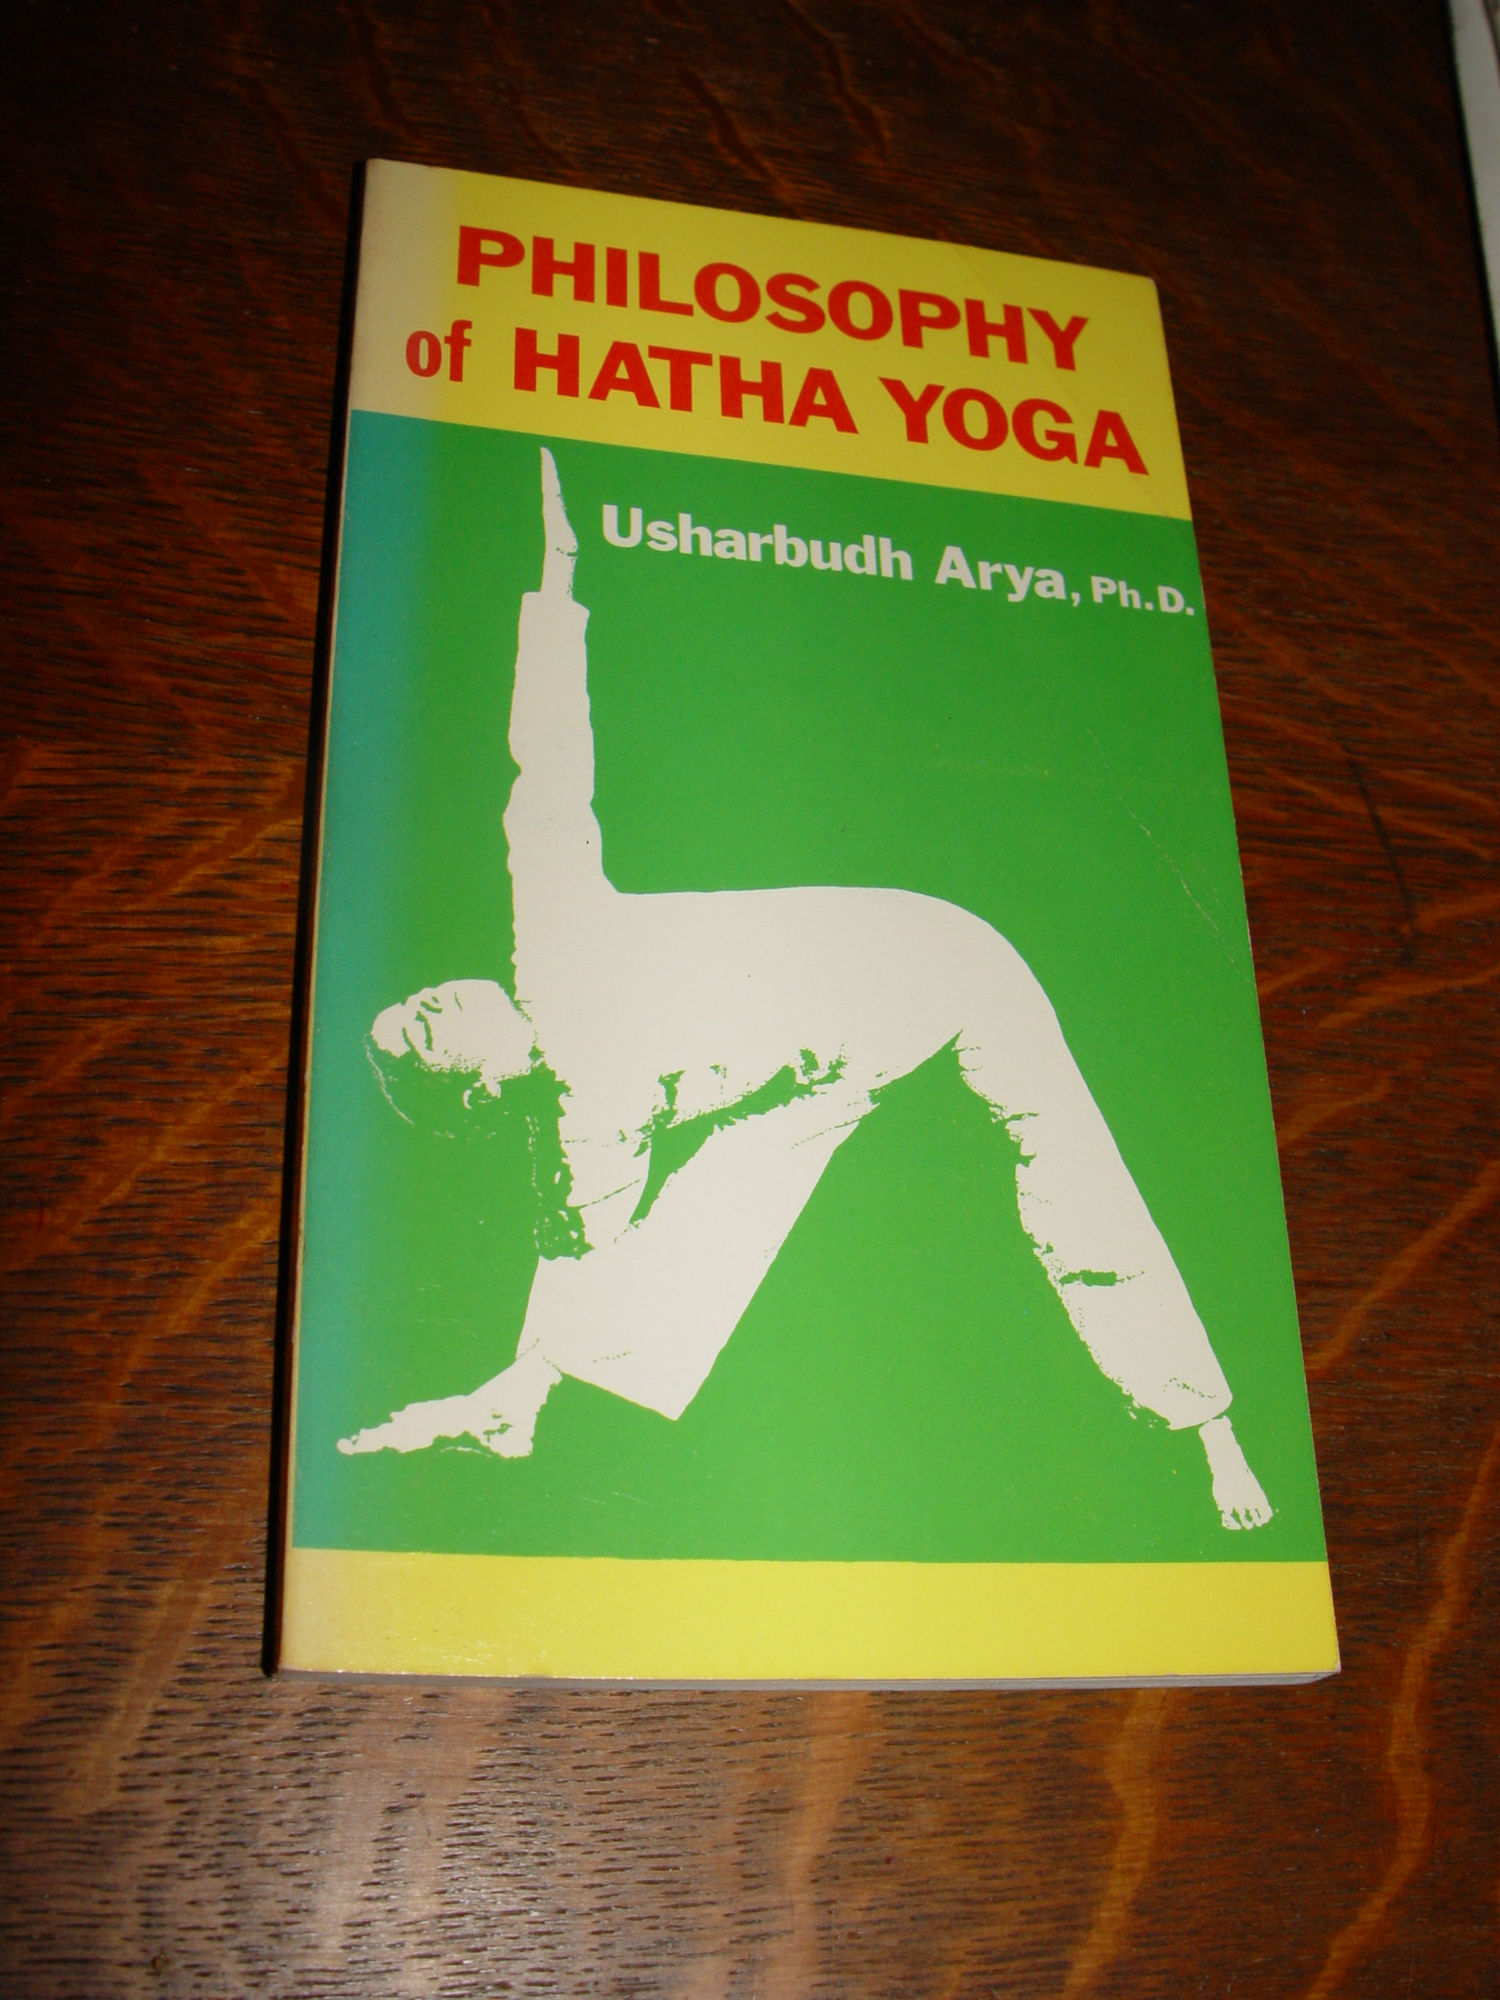 Philosophy of Hatha Yoga 1977 by Usharbudh
                        Arya Ph.D.